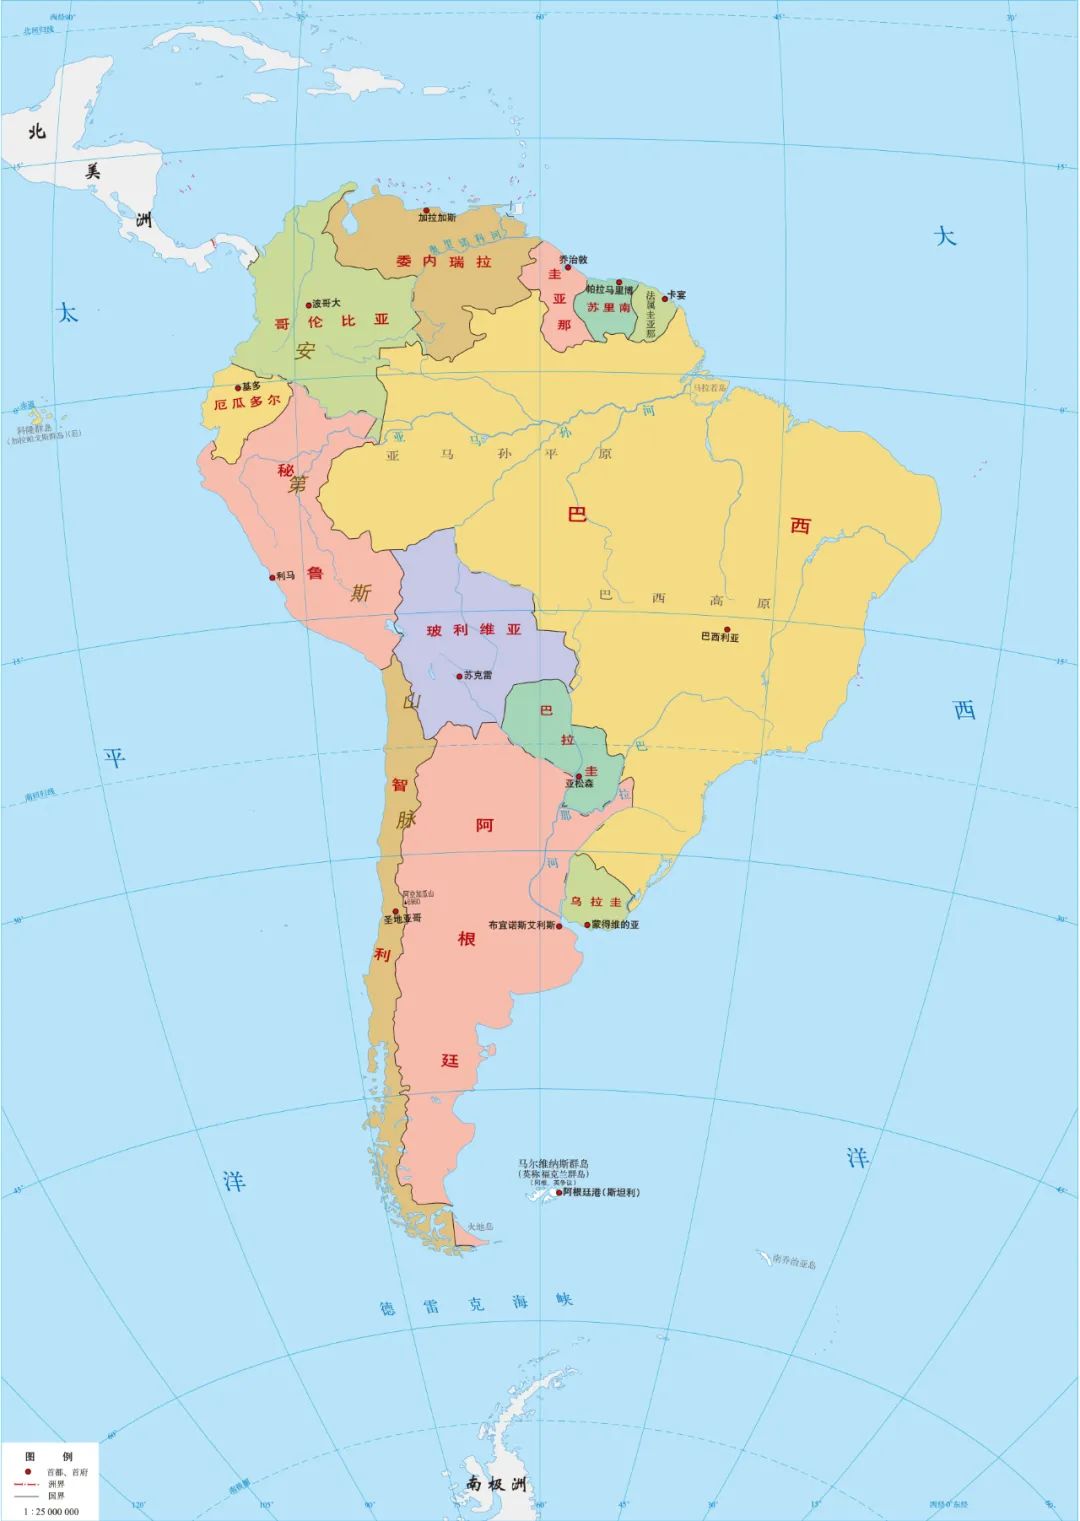 南美洲面积